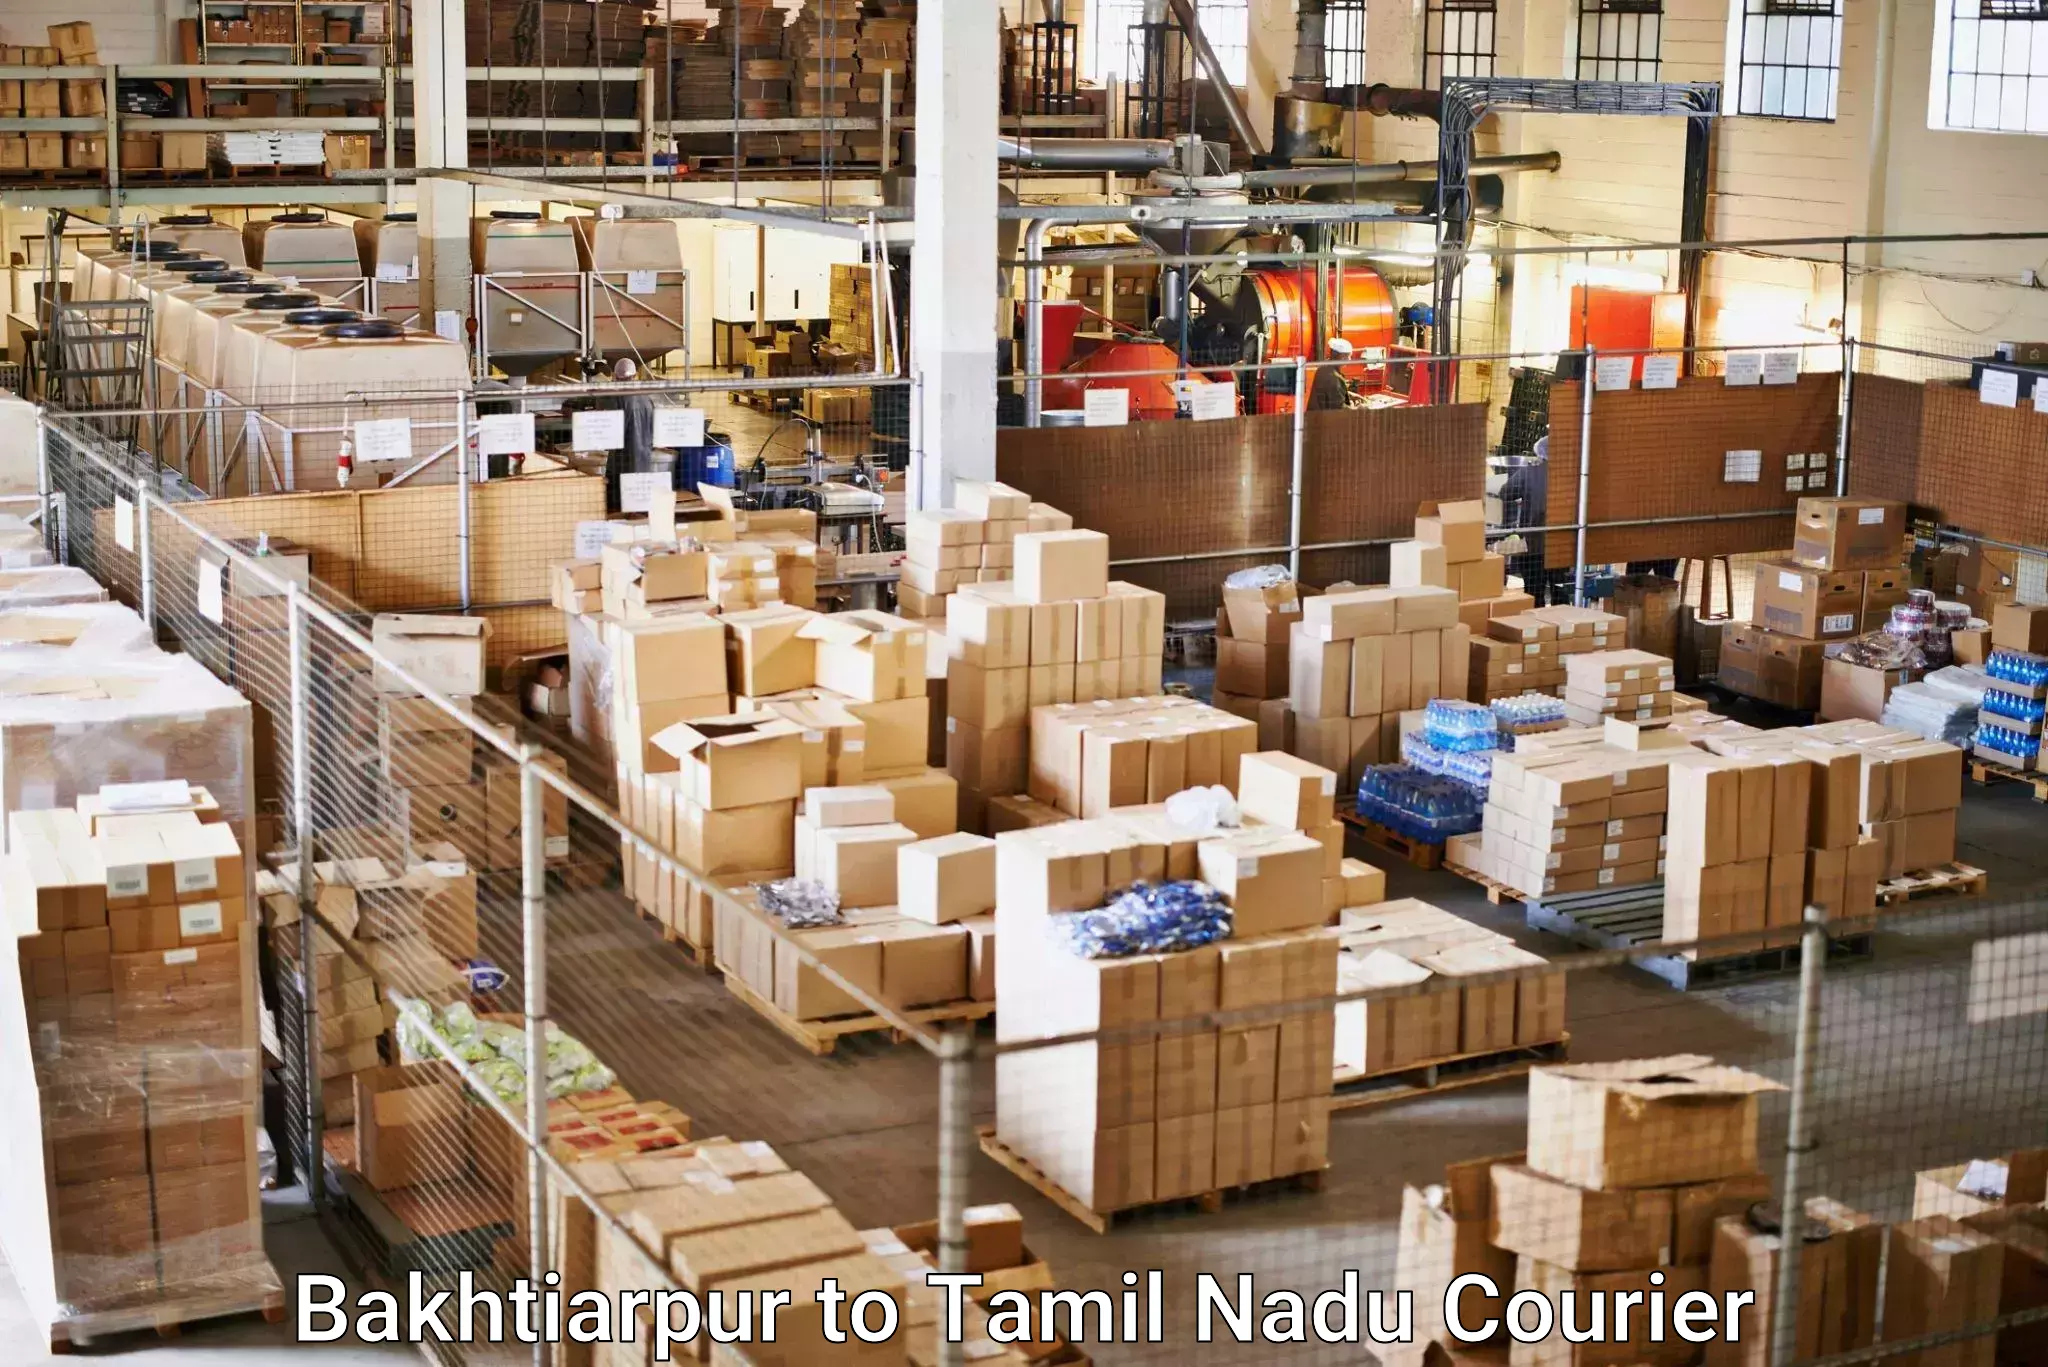 Courier service efficiency Bakhtiarpur to Vilathikulam